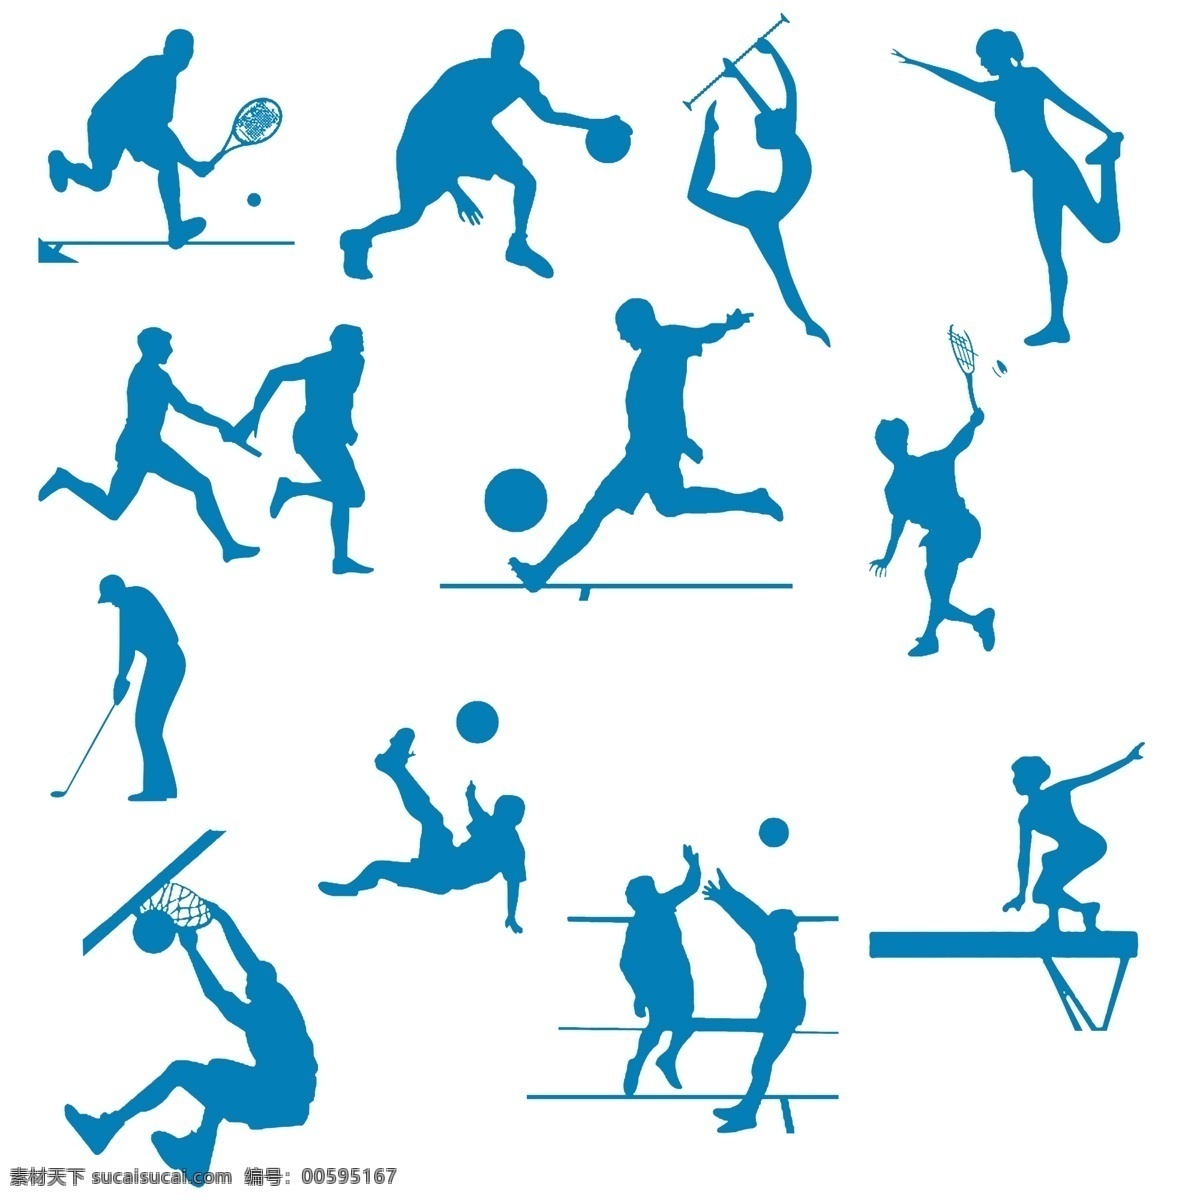 体育项目 模版下载 体育运动 体育剪纸 足球 排球 篮球 接力 平衡木 体操 高尔夫 羽毛球 网球 源文件 文化艺术